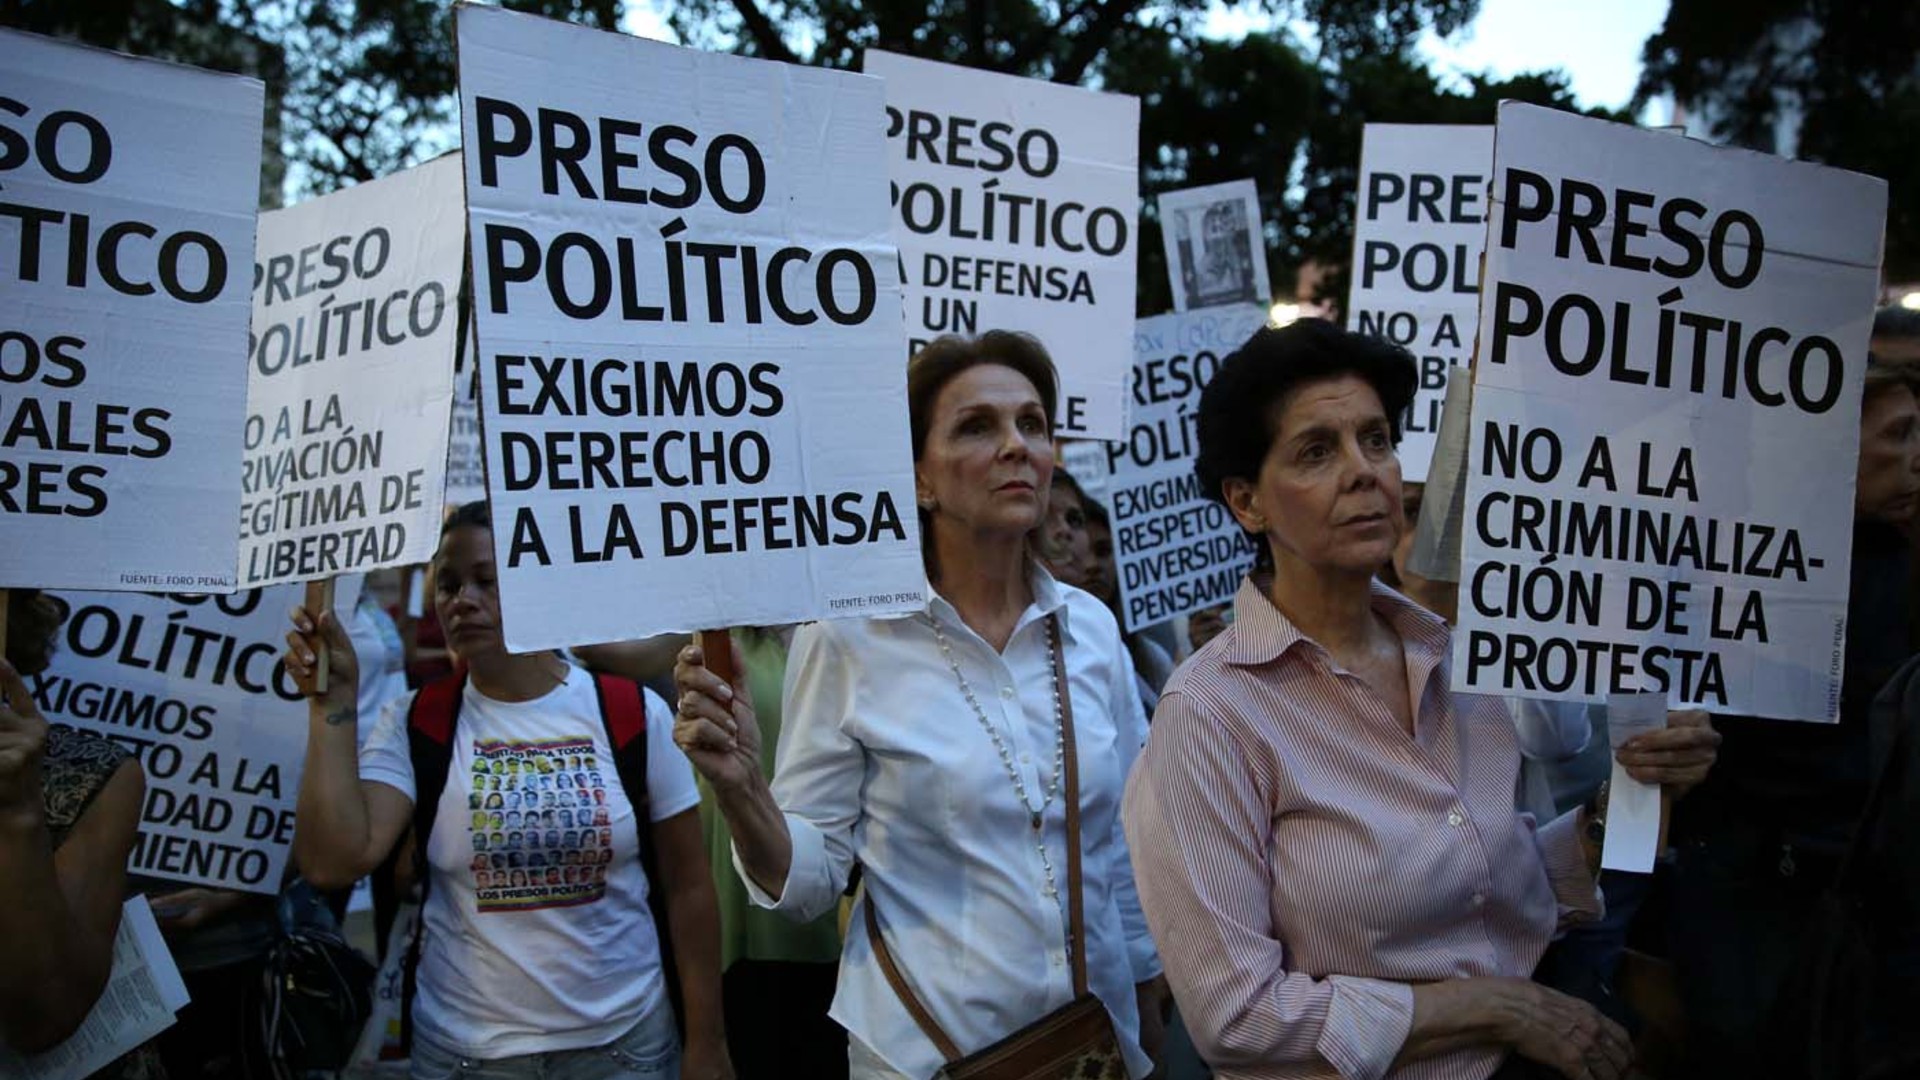 Mujeres, adolescentes y militares como presos políticos en Venezuela